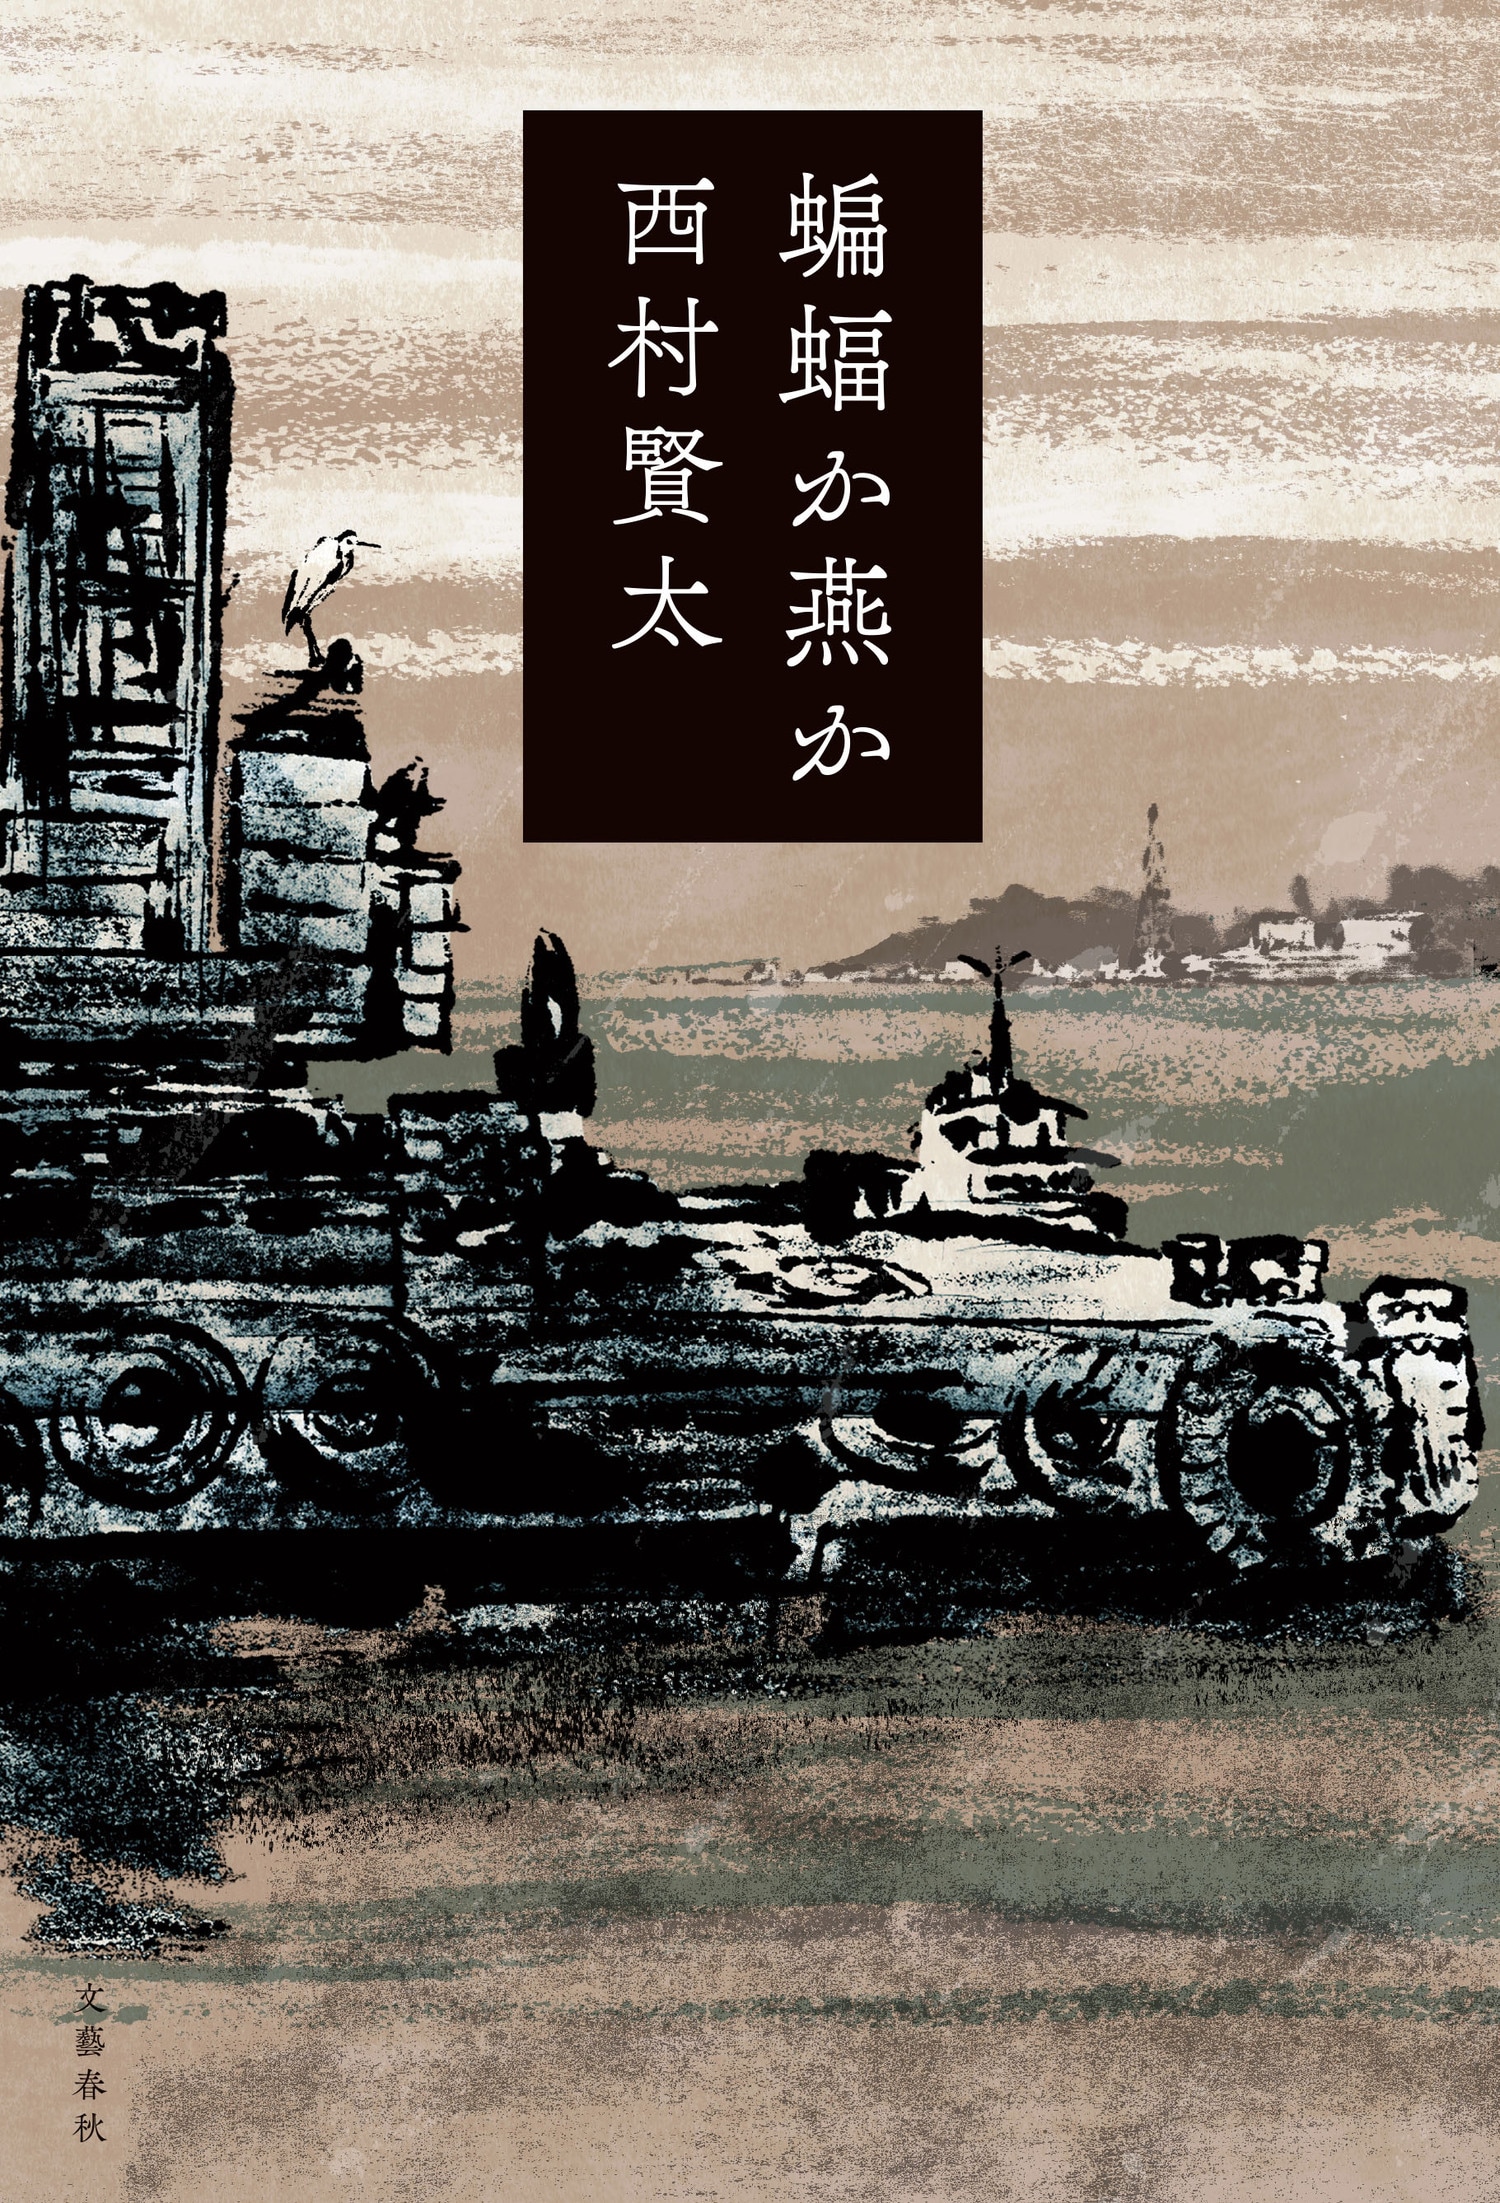 読者からの熱烈な要望によって実現した、西村賢太の未刊行小説集『蝙蝠か燕か』